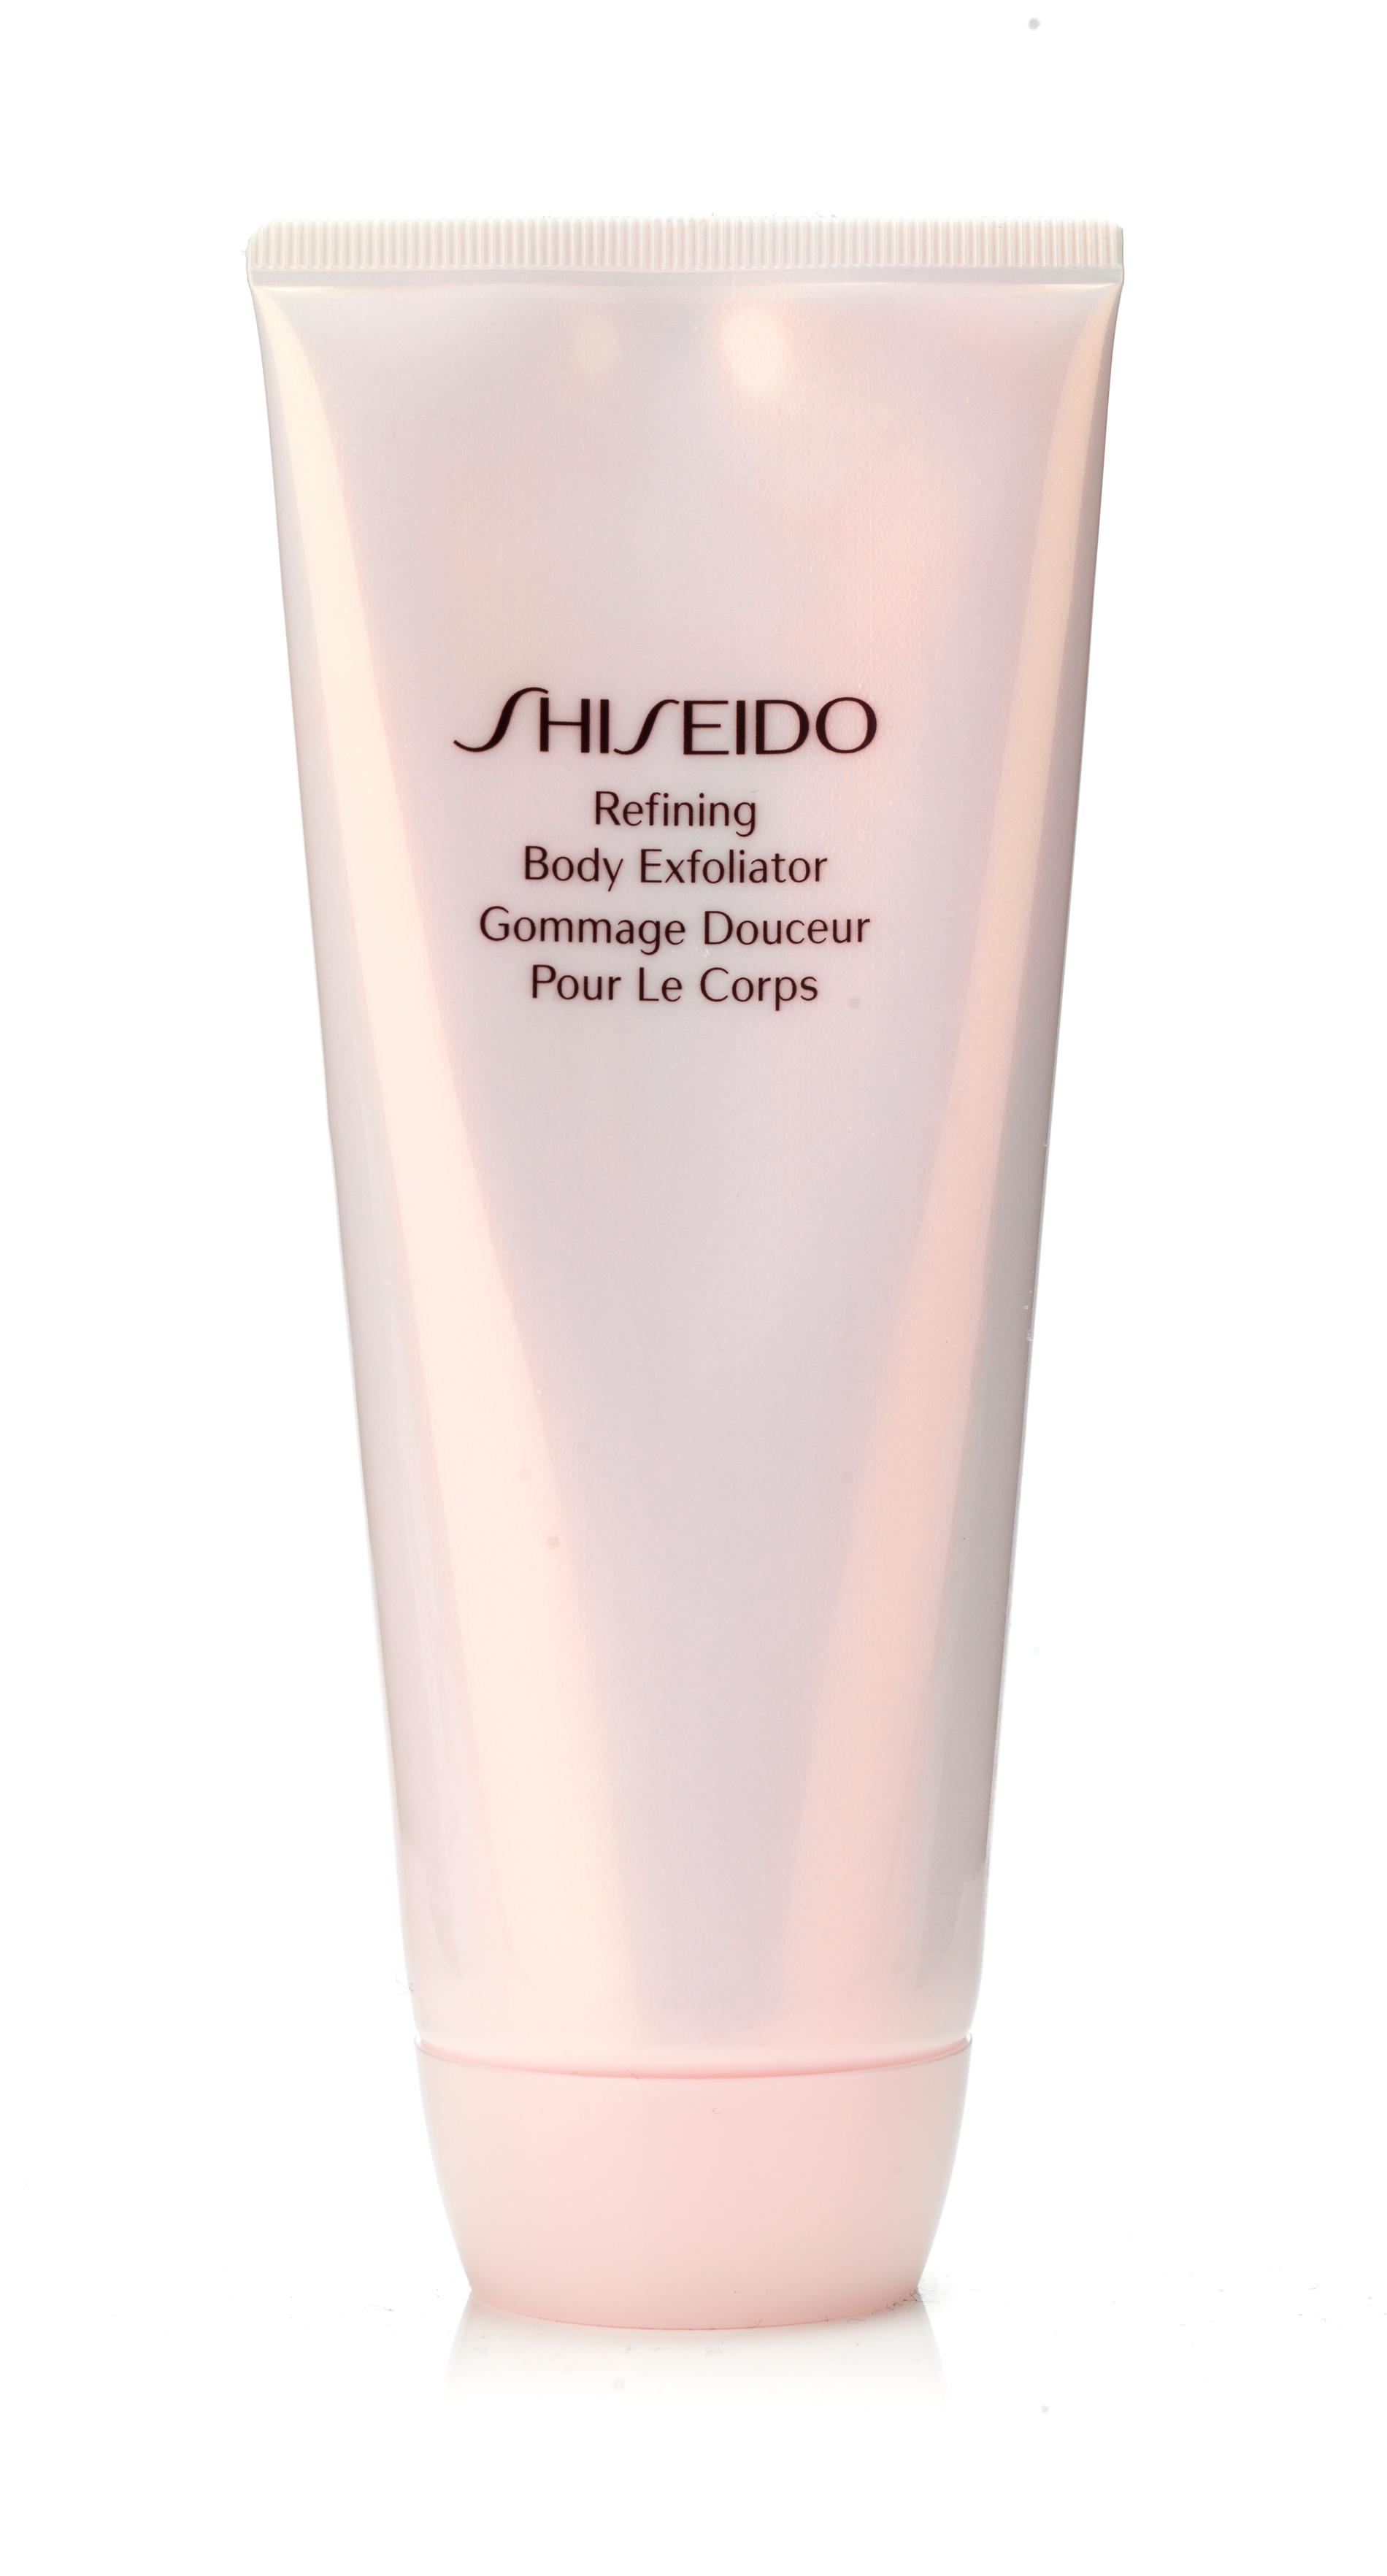 5”Refining body 
exfoliator”,
425 kronor, Shiseido.
Rosafärgad, fyllig och dryg peelingkräm fullproppad med små, synnerligen envetna skrubbkorn. Lämnar huden 
silkeslen med en sval, pudrig känsla och ganska stark doft av parfym.